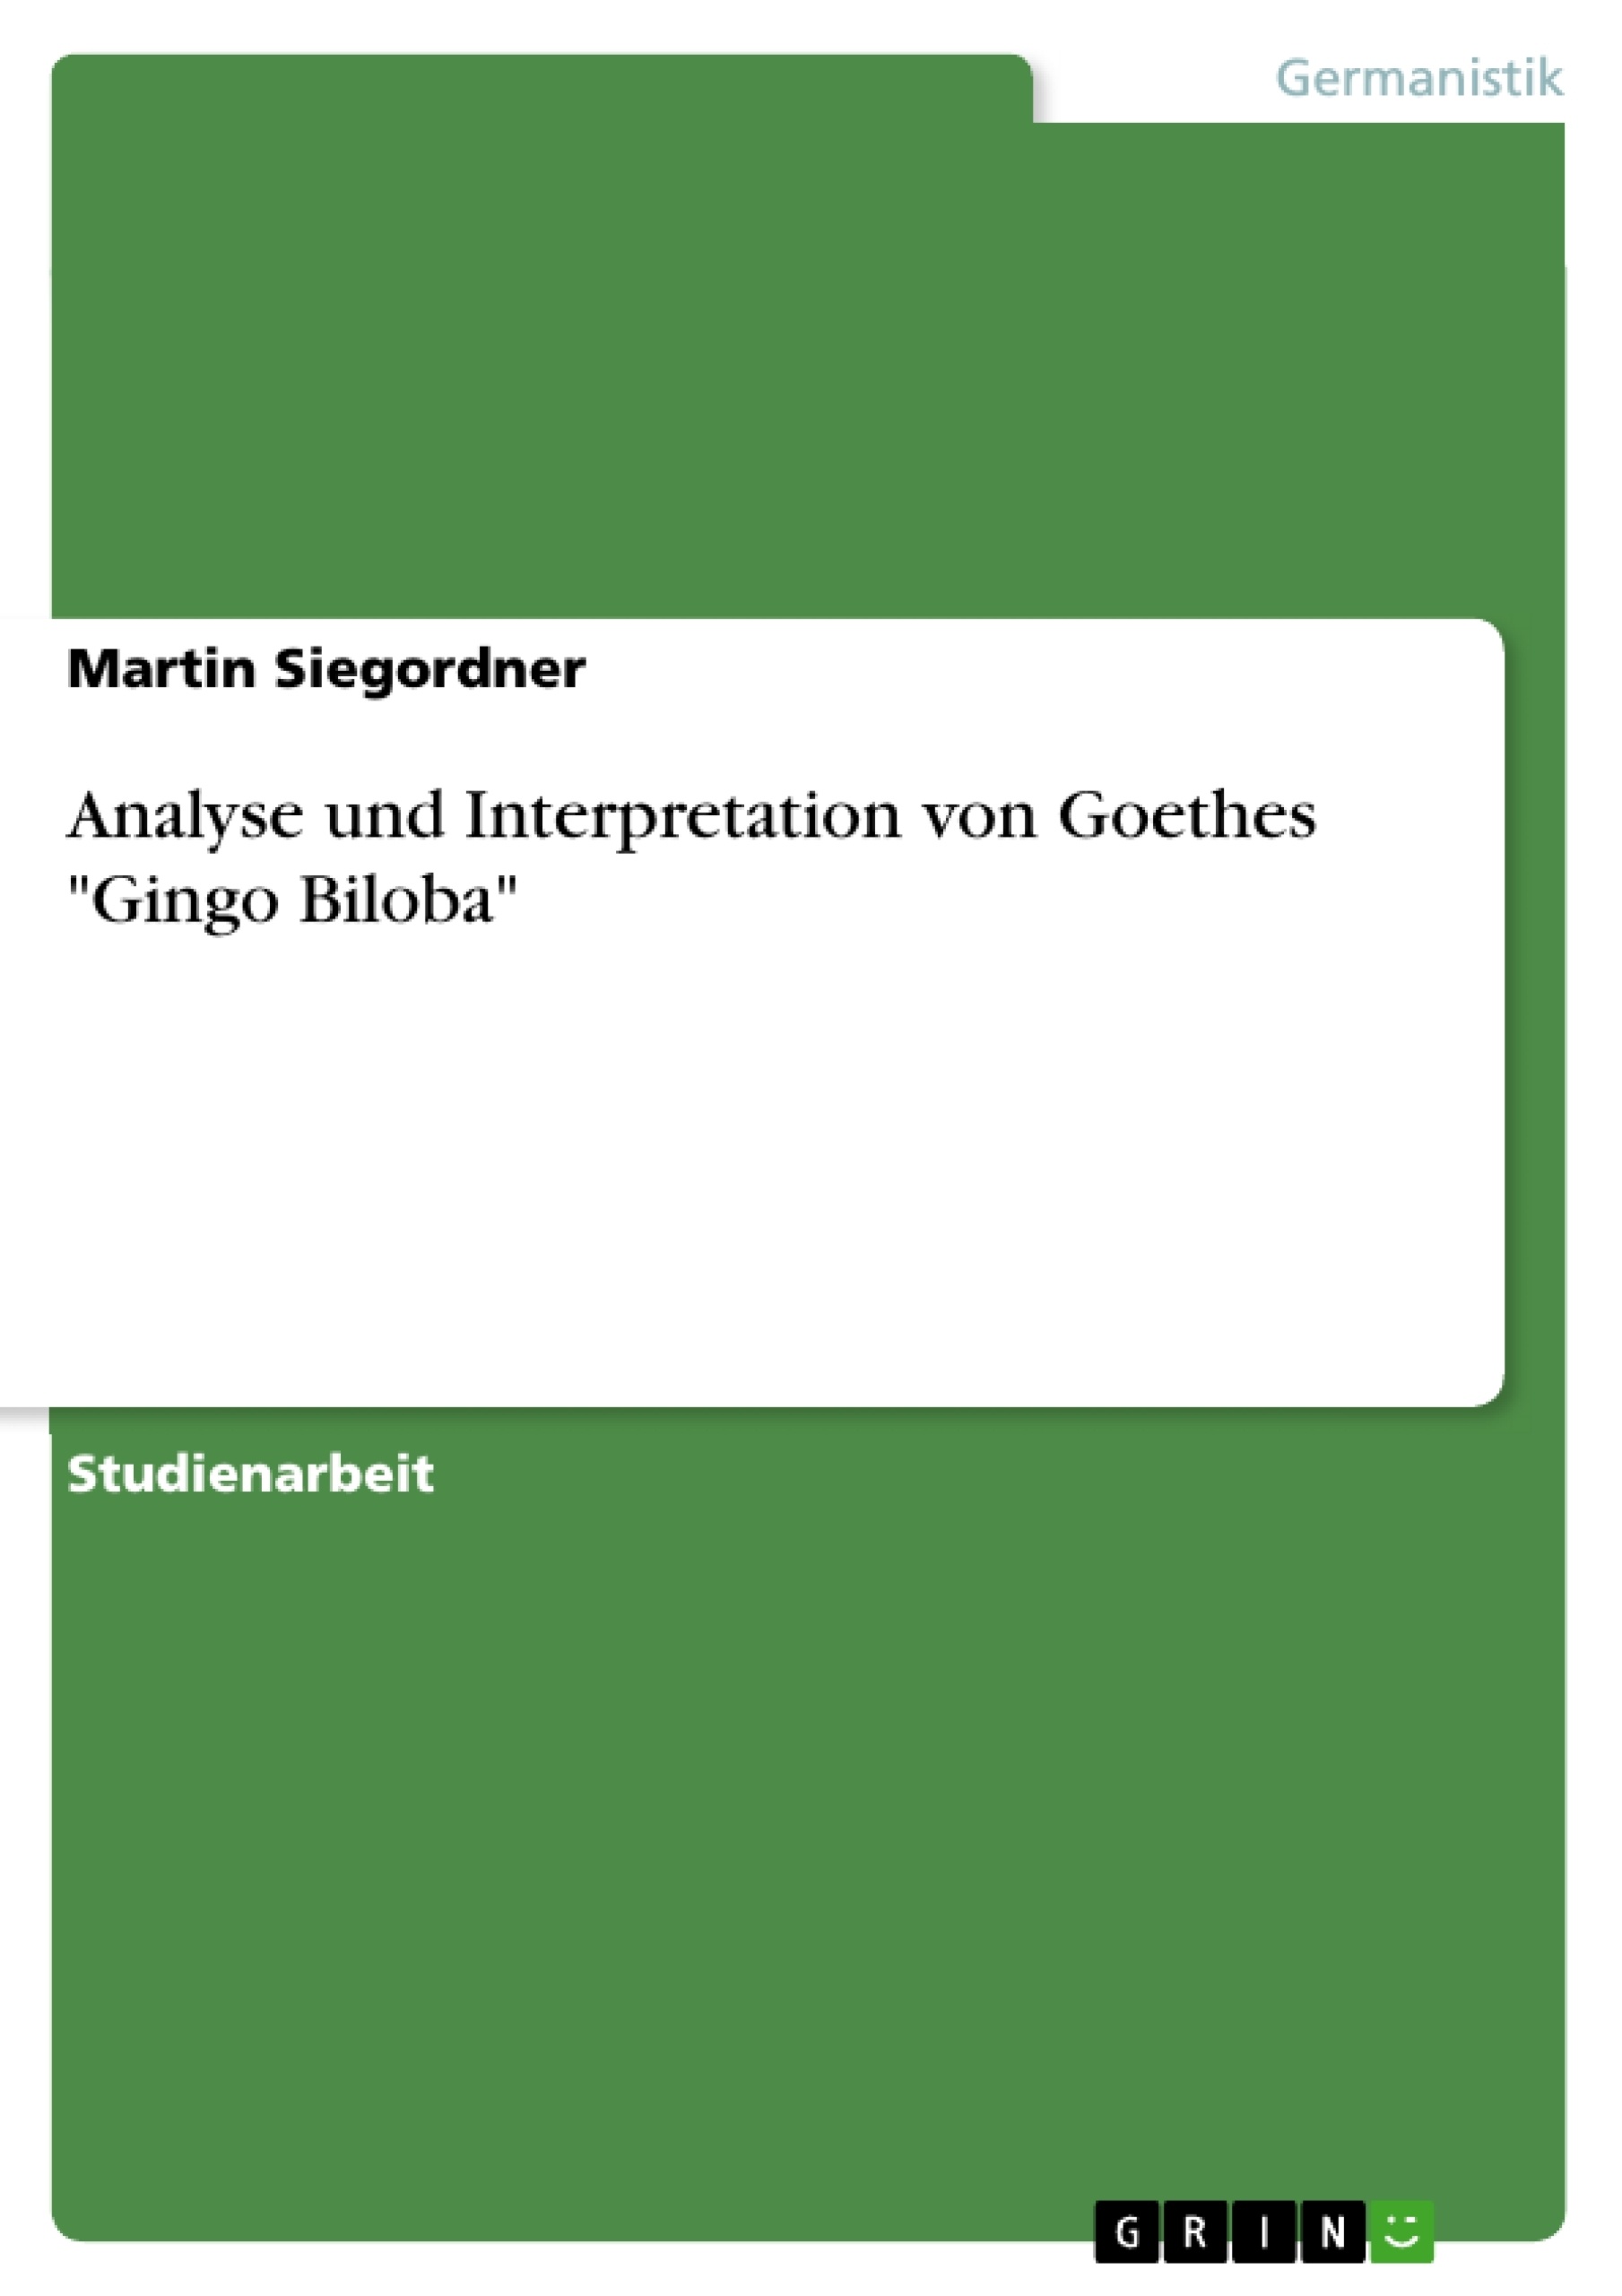 Title: Analyse und Interpretation von Goethes "Gingo Biloba"